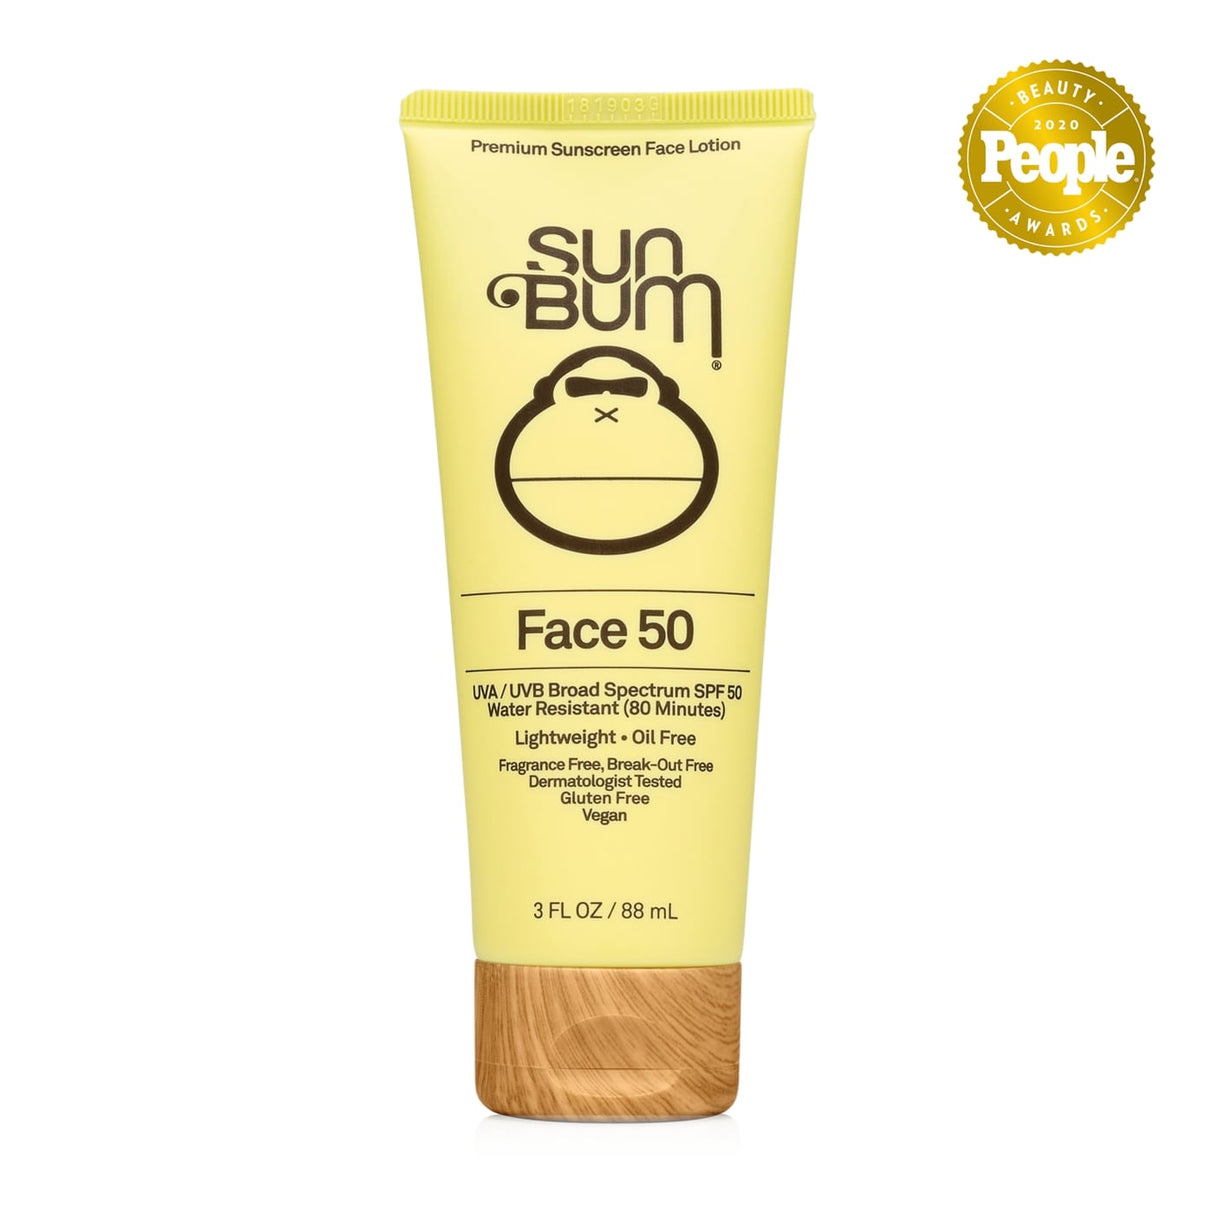 SunBum Original Face 50' SPF 50 Sun Screen Lotion 88ml